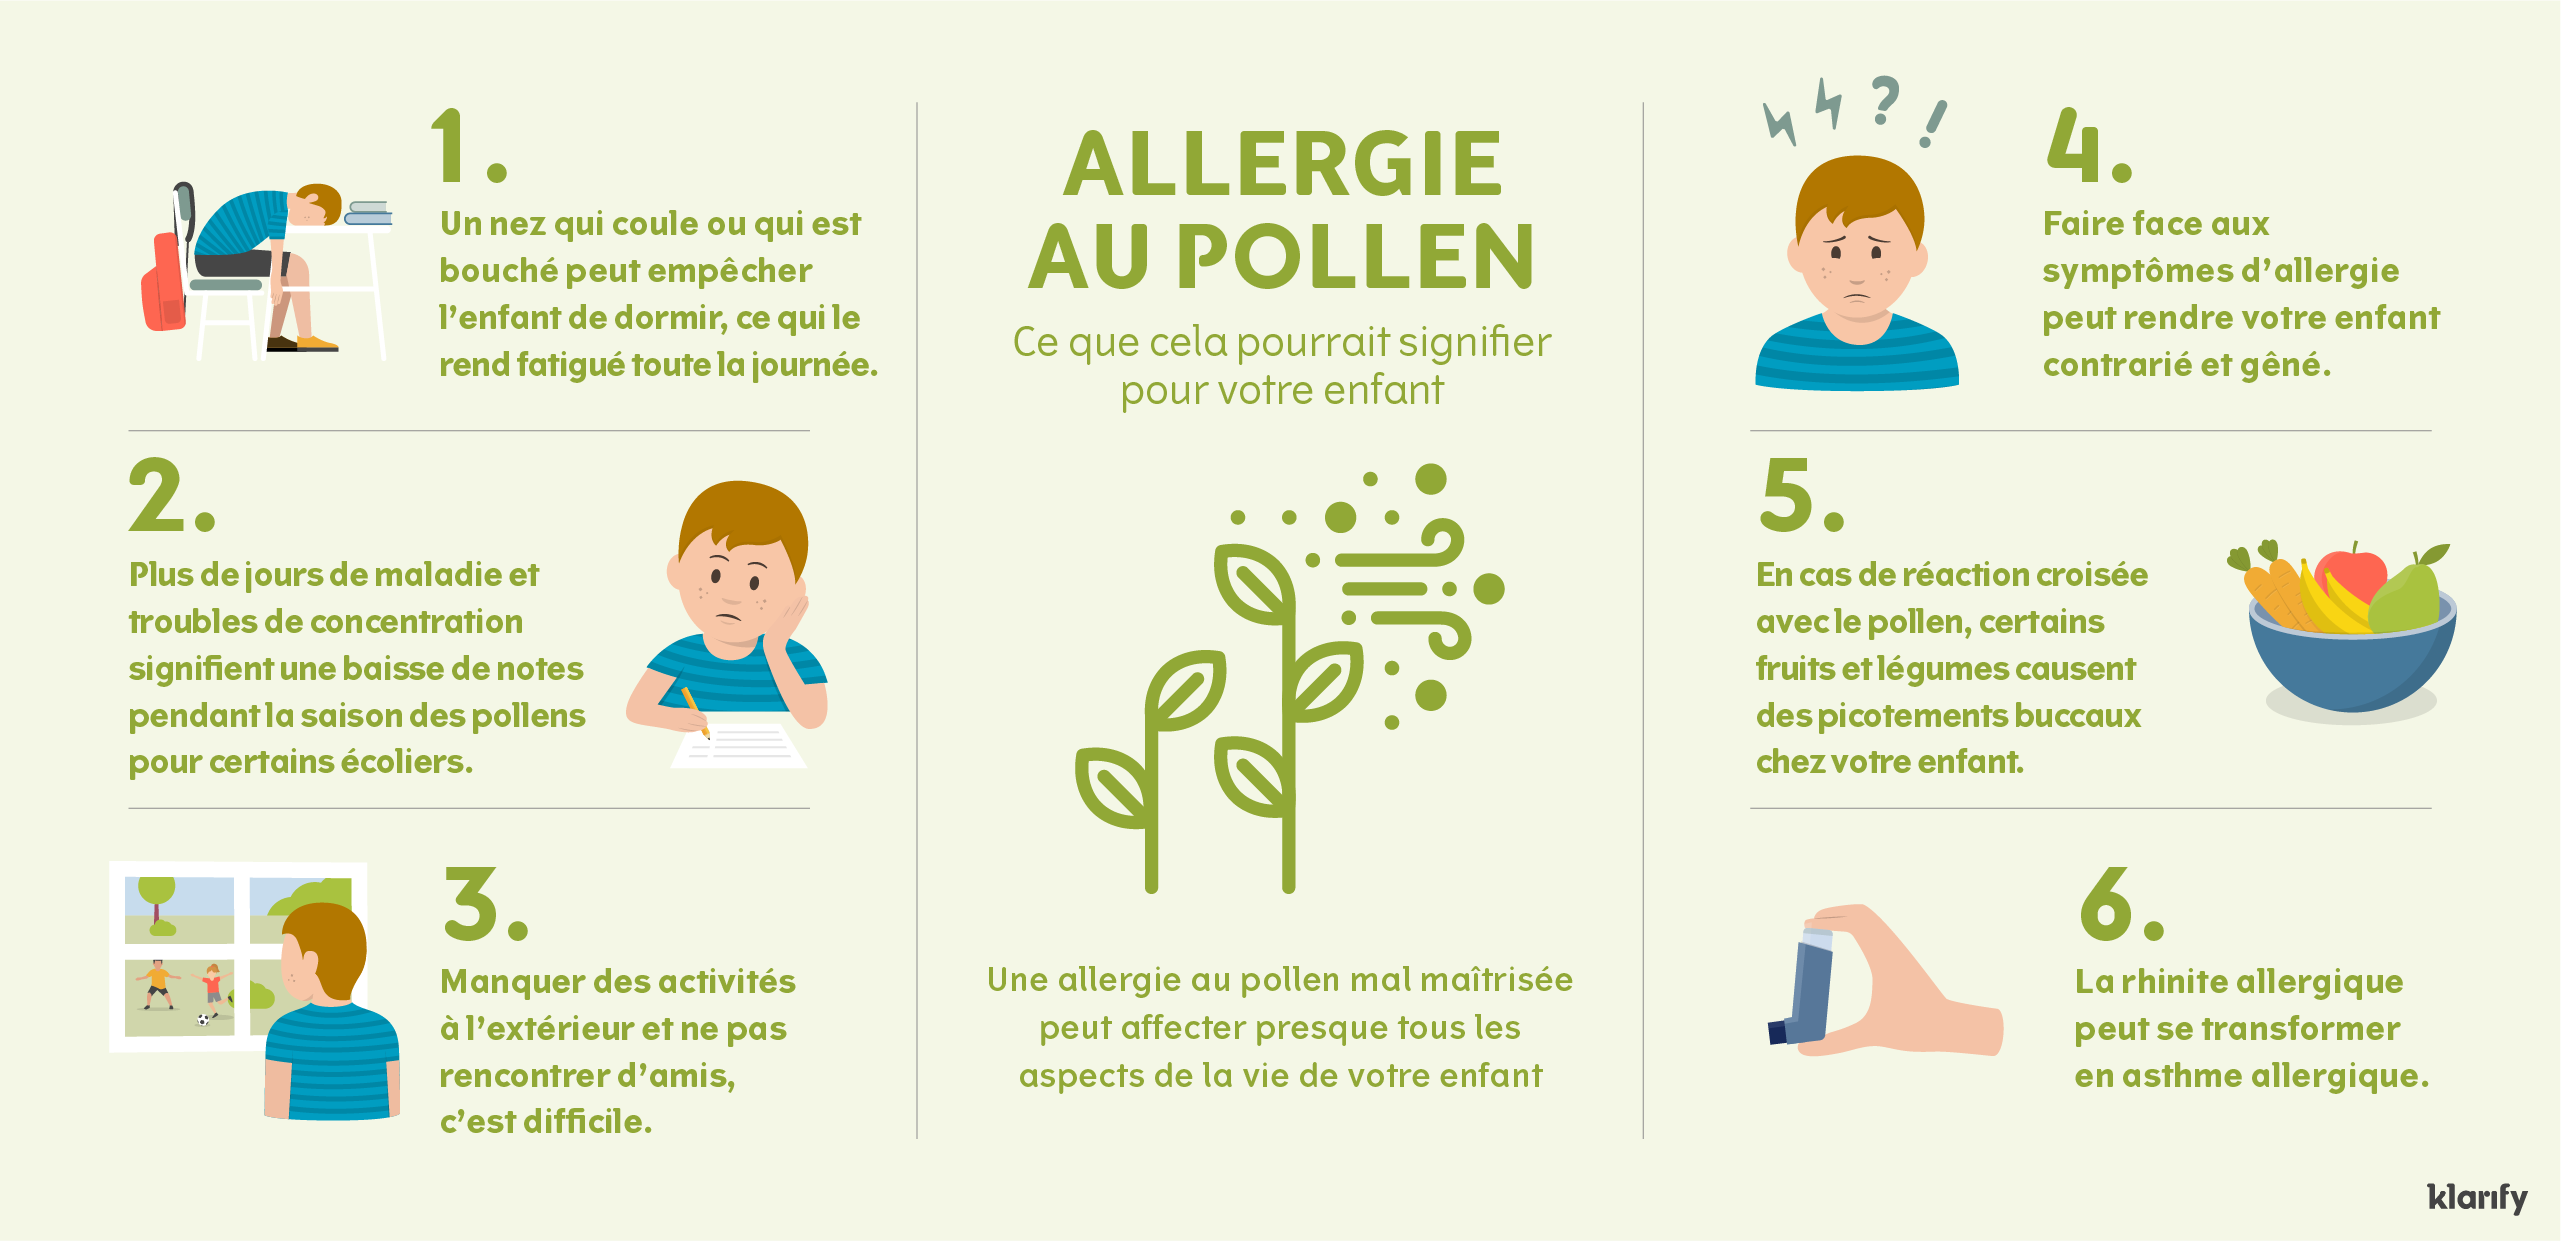 Infographie sur l’impact de l’allergie au pollen sur les enfants. Détails de l’infographie ci-dessous